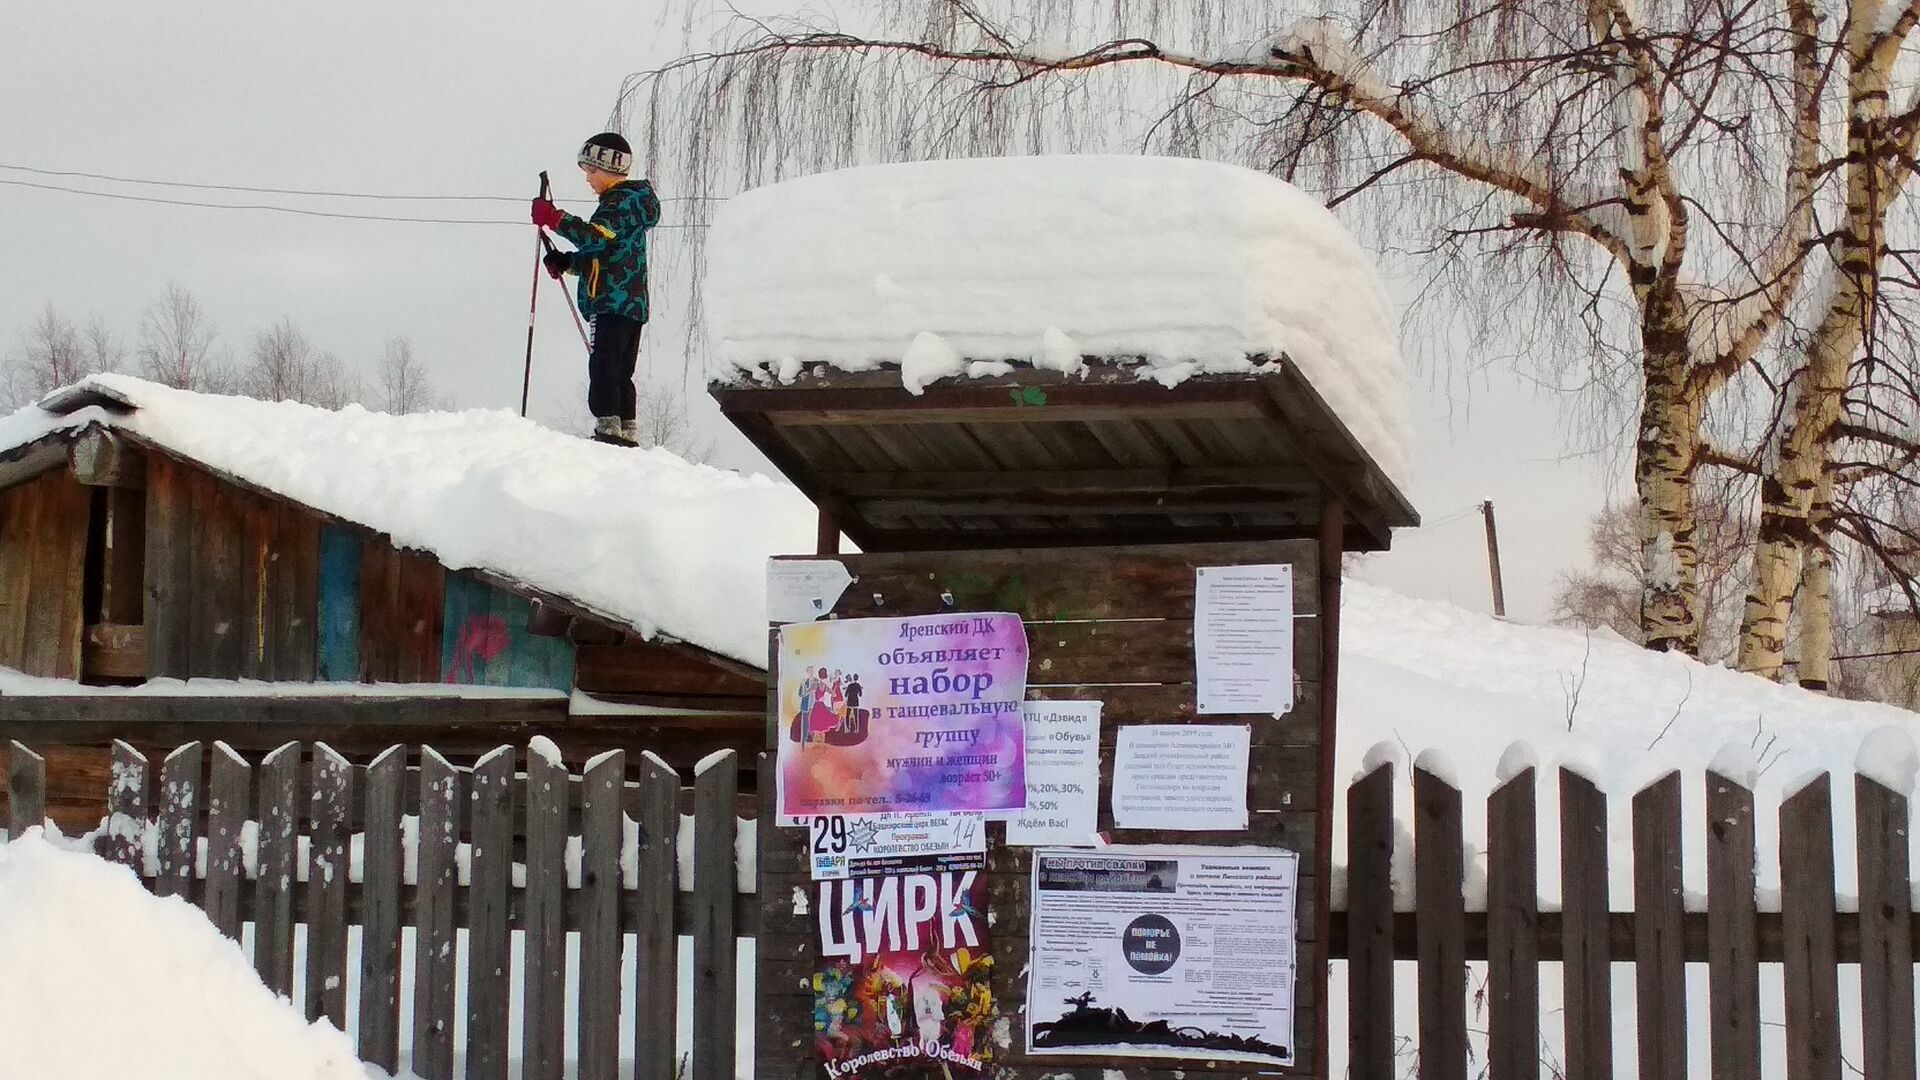 Дополнительные занятия по физкультуре: дети катаются на лыжах с крыши полуразрушенного сарая